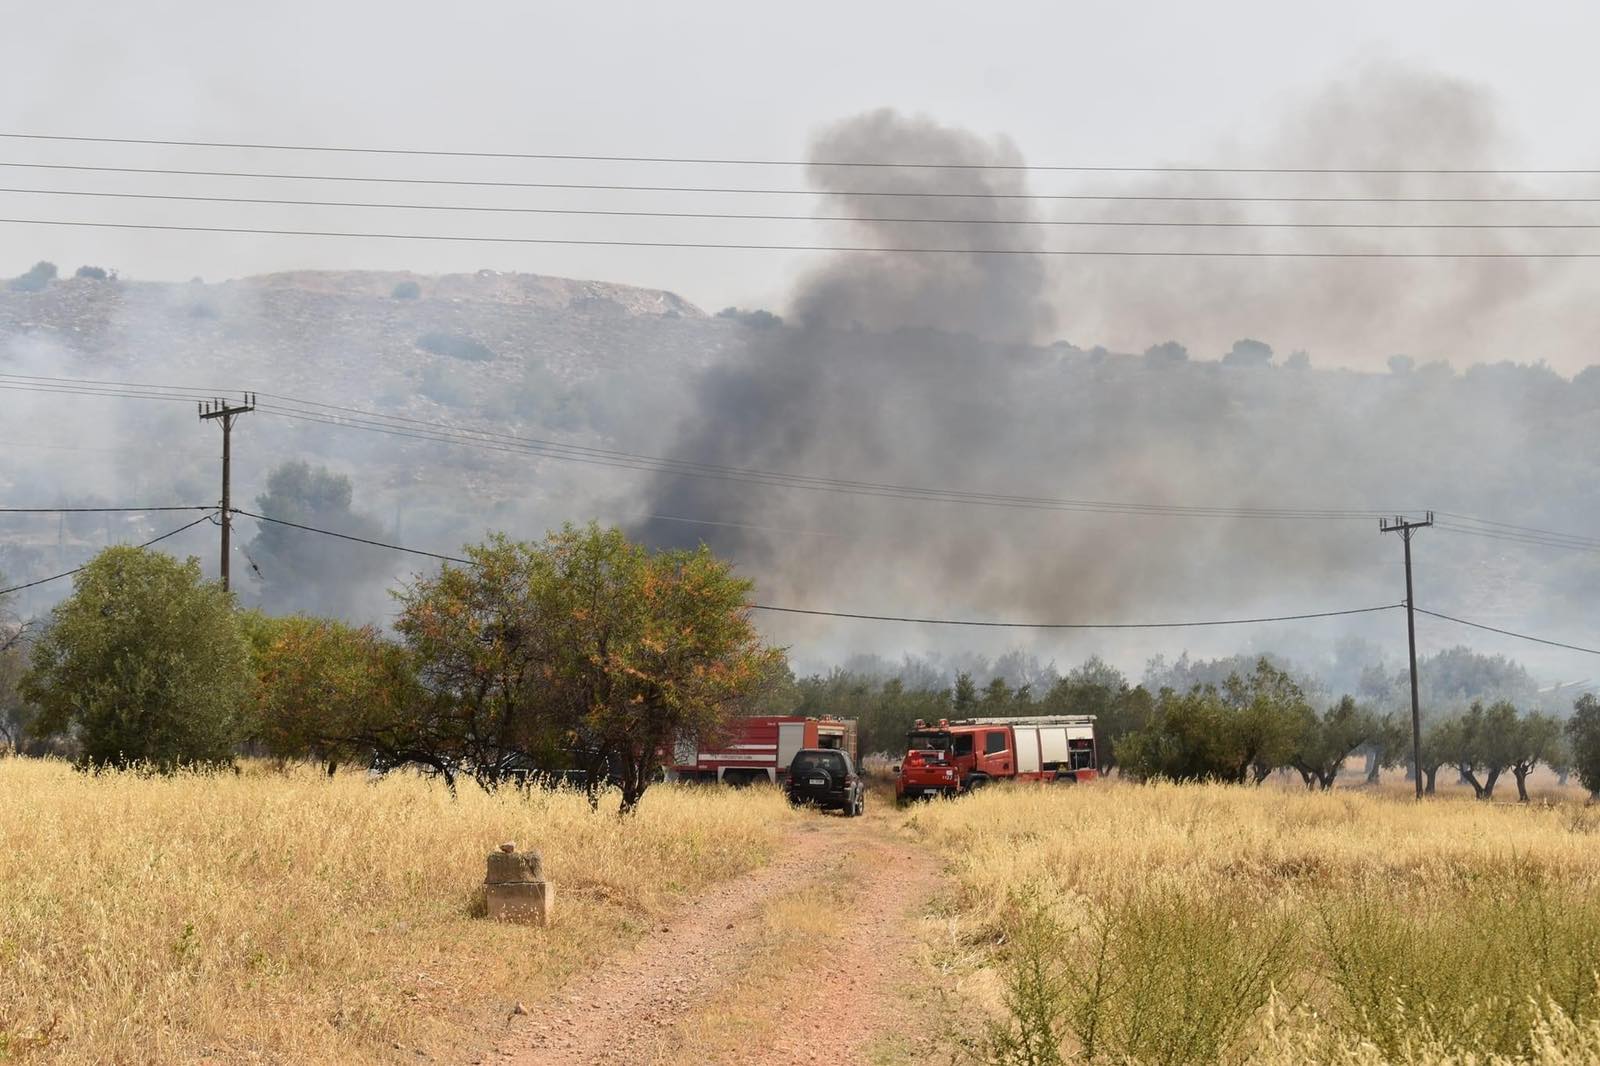 Νέα Κίος: Δεύτερη φωτιά στο ίδιο σημείο μέσα σε λίγη ώρα – Απειλήθηκαν σπίτια